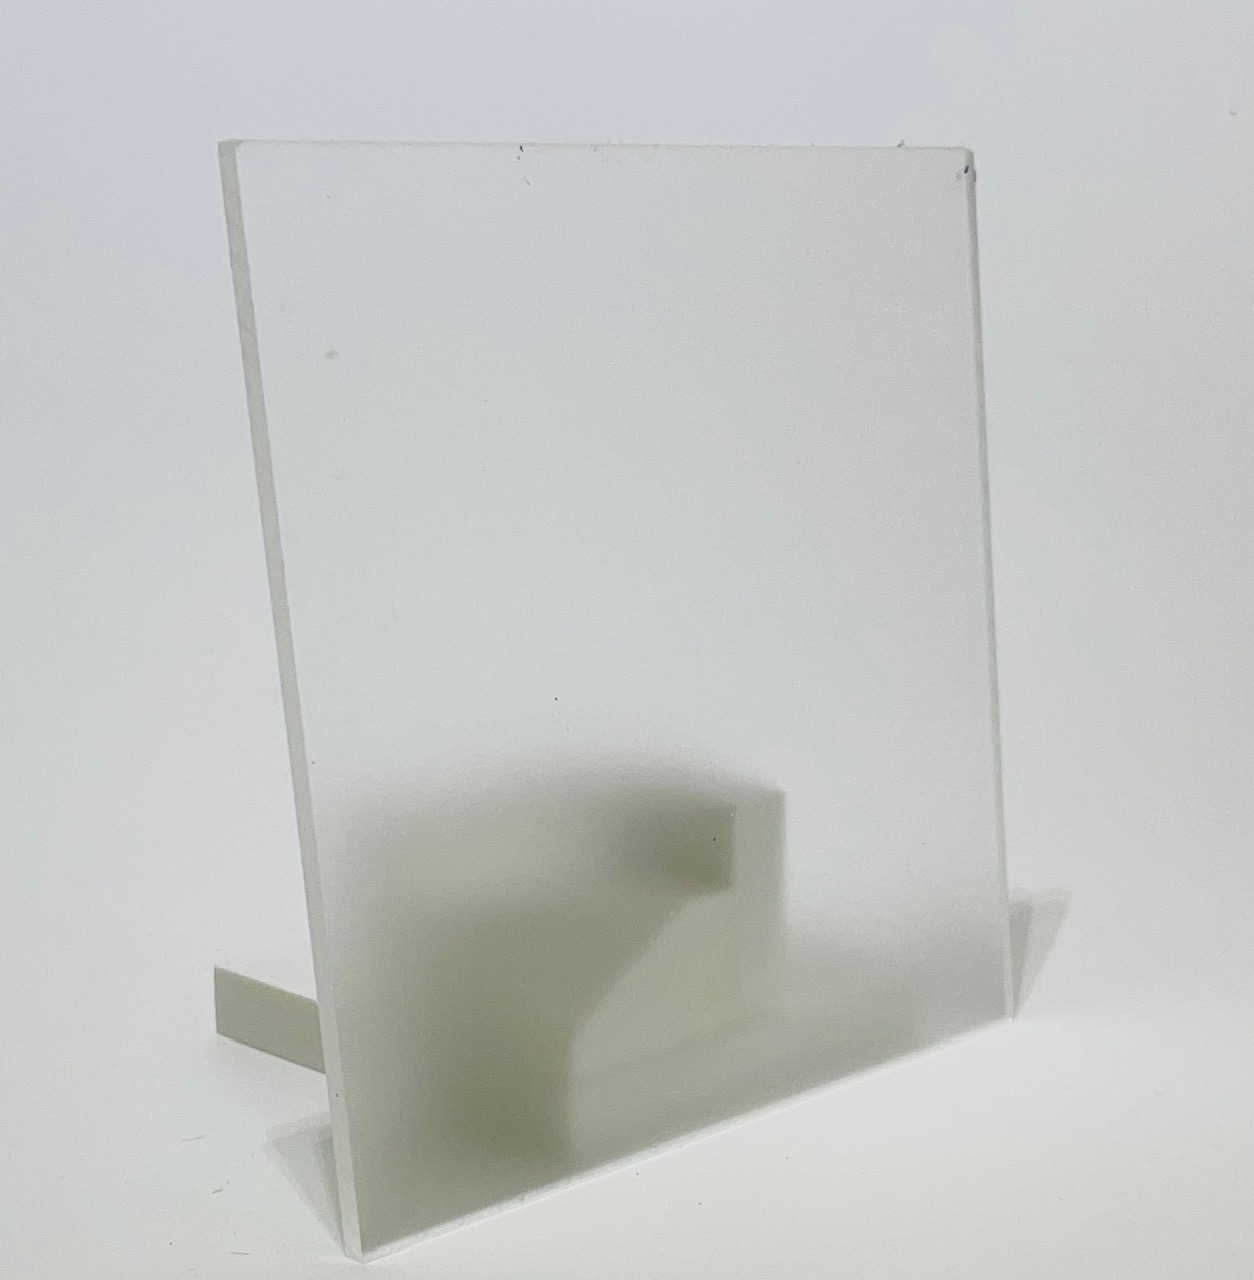 Plaque plexi transparent incolore brillant sur mesure (extrudé) 3mm